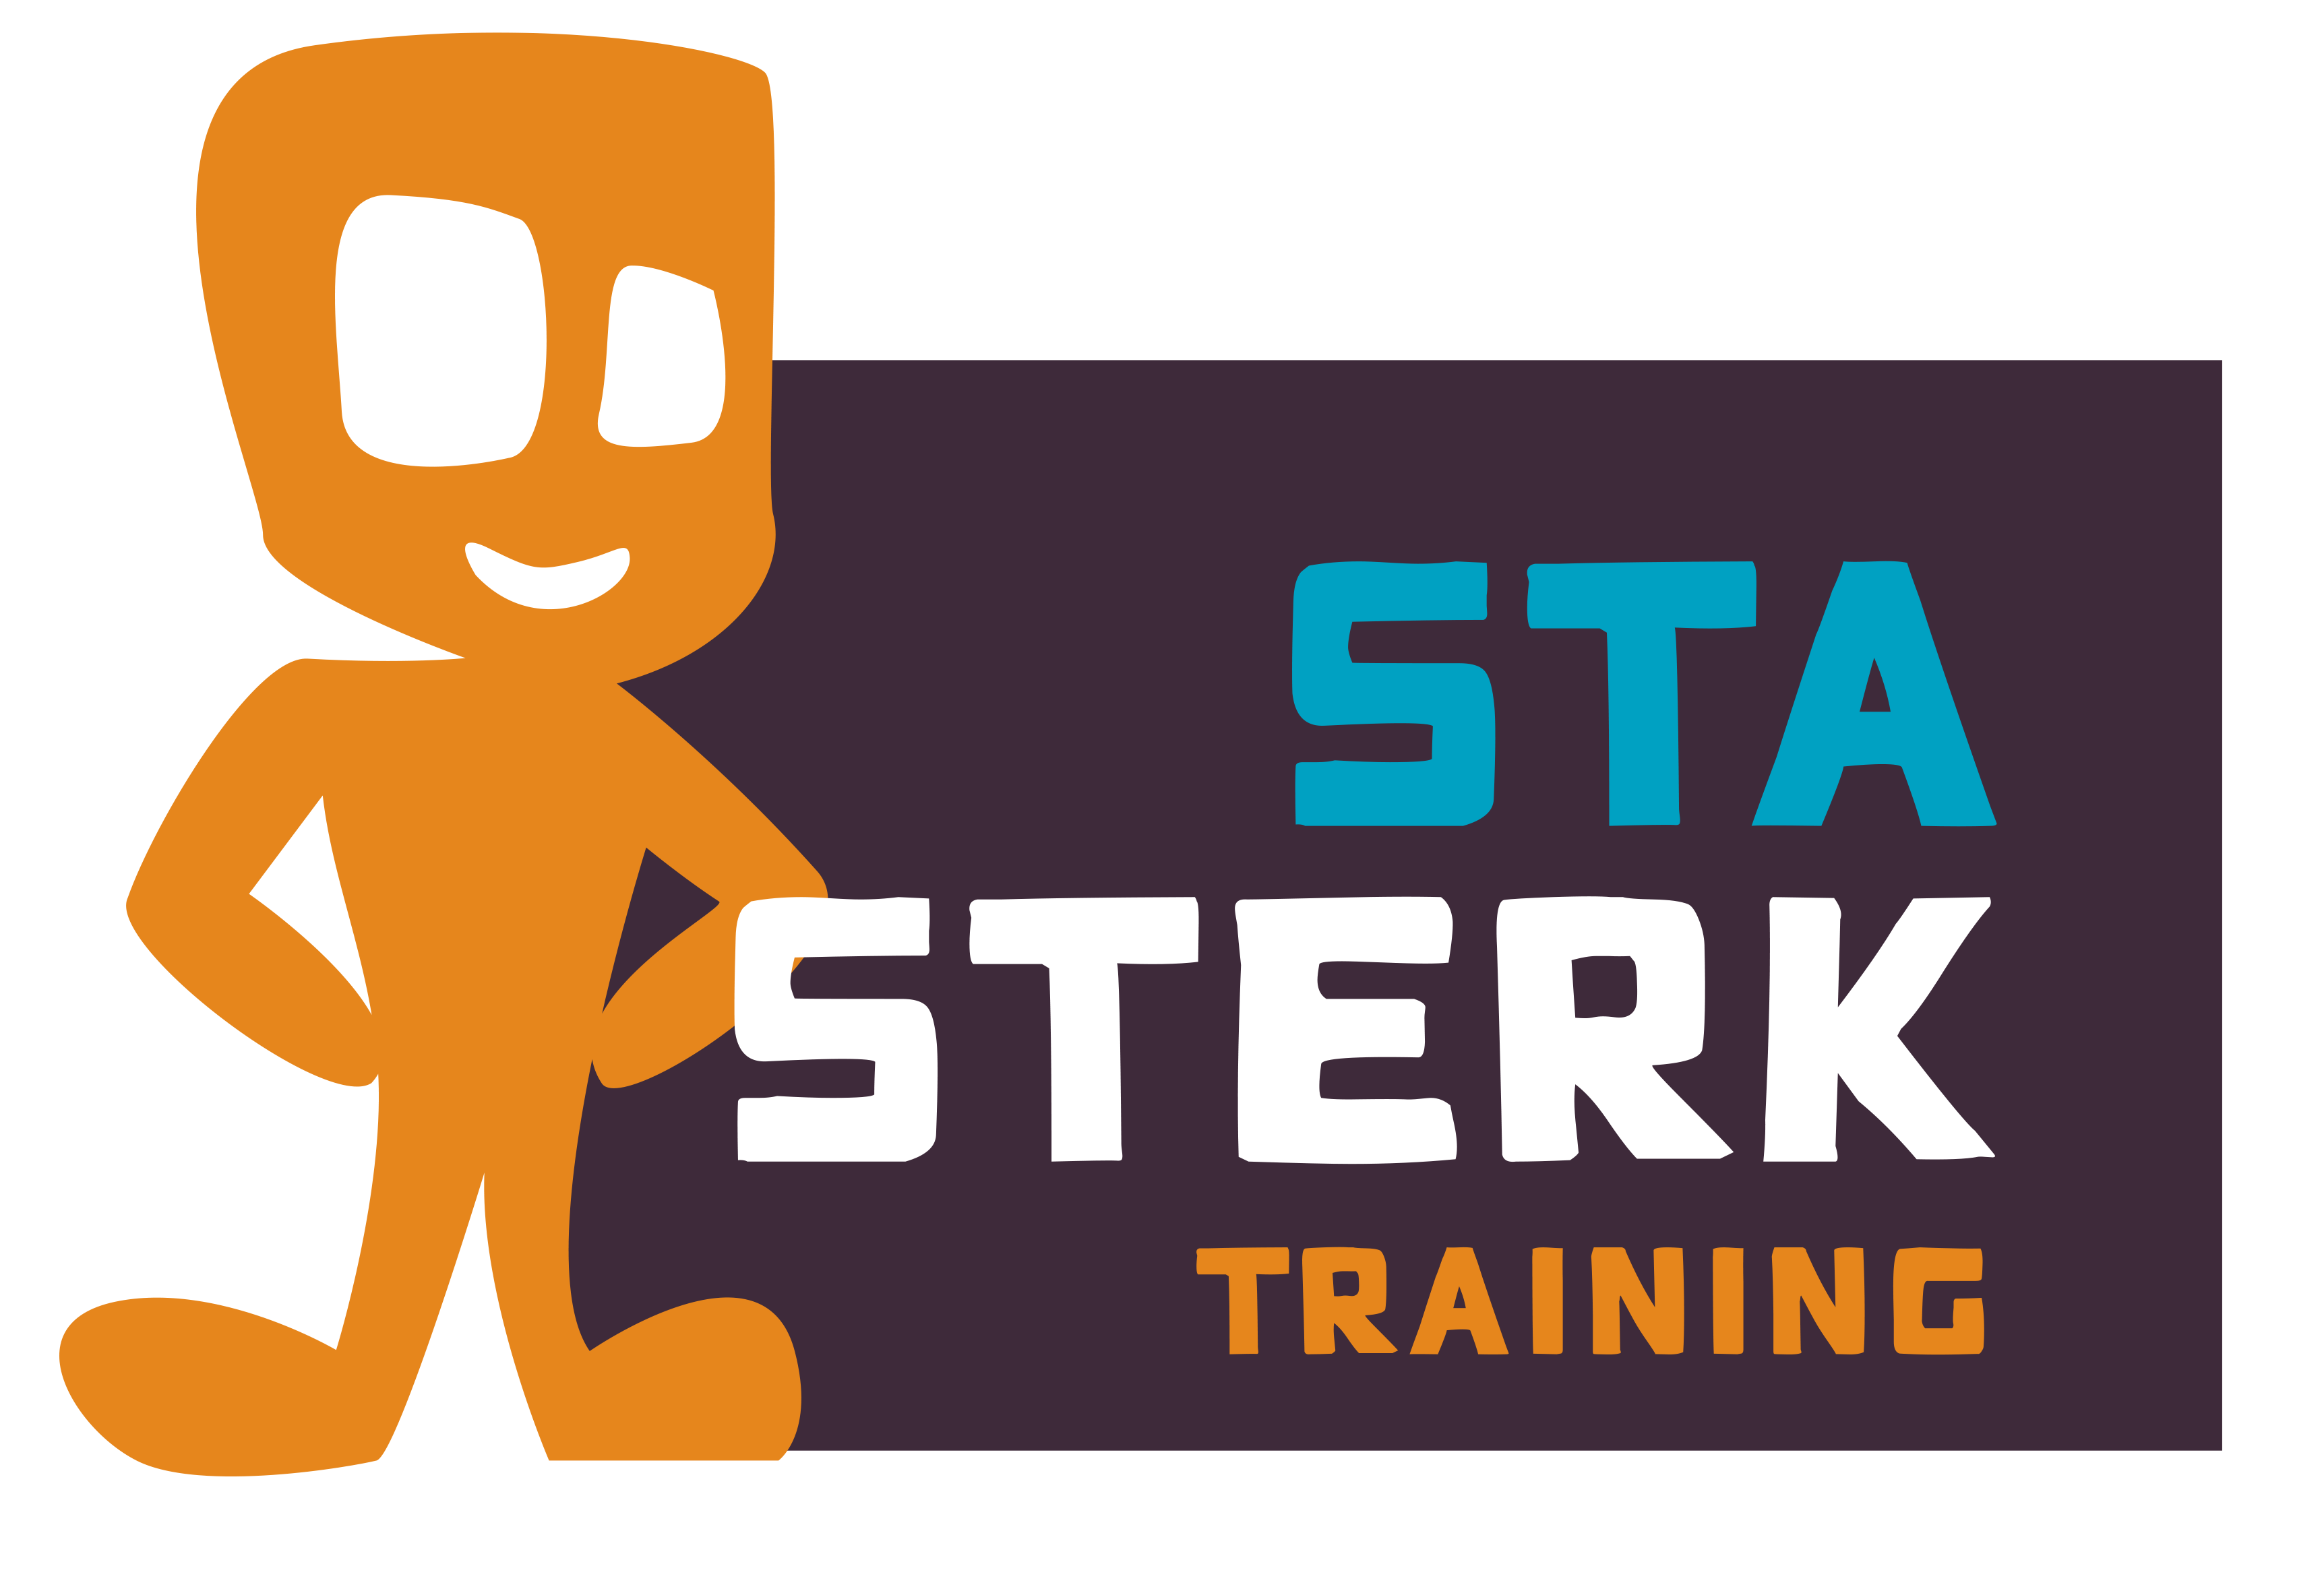 Sta Sterk training logo